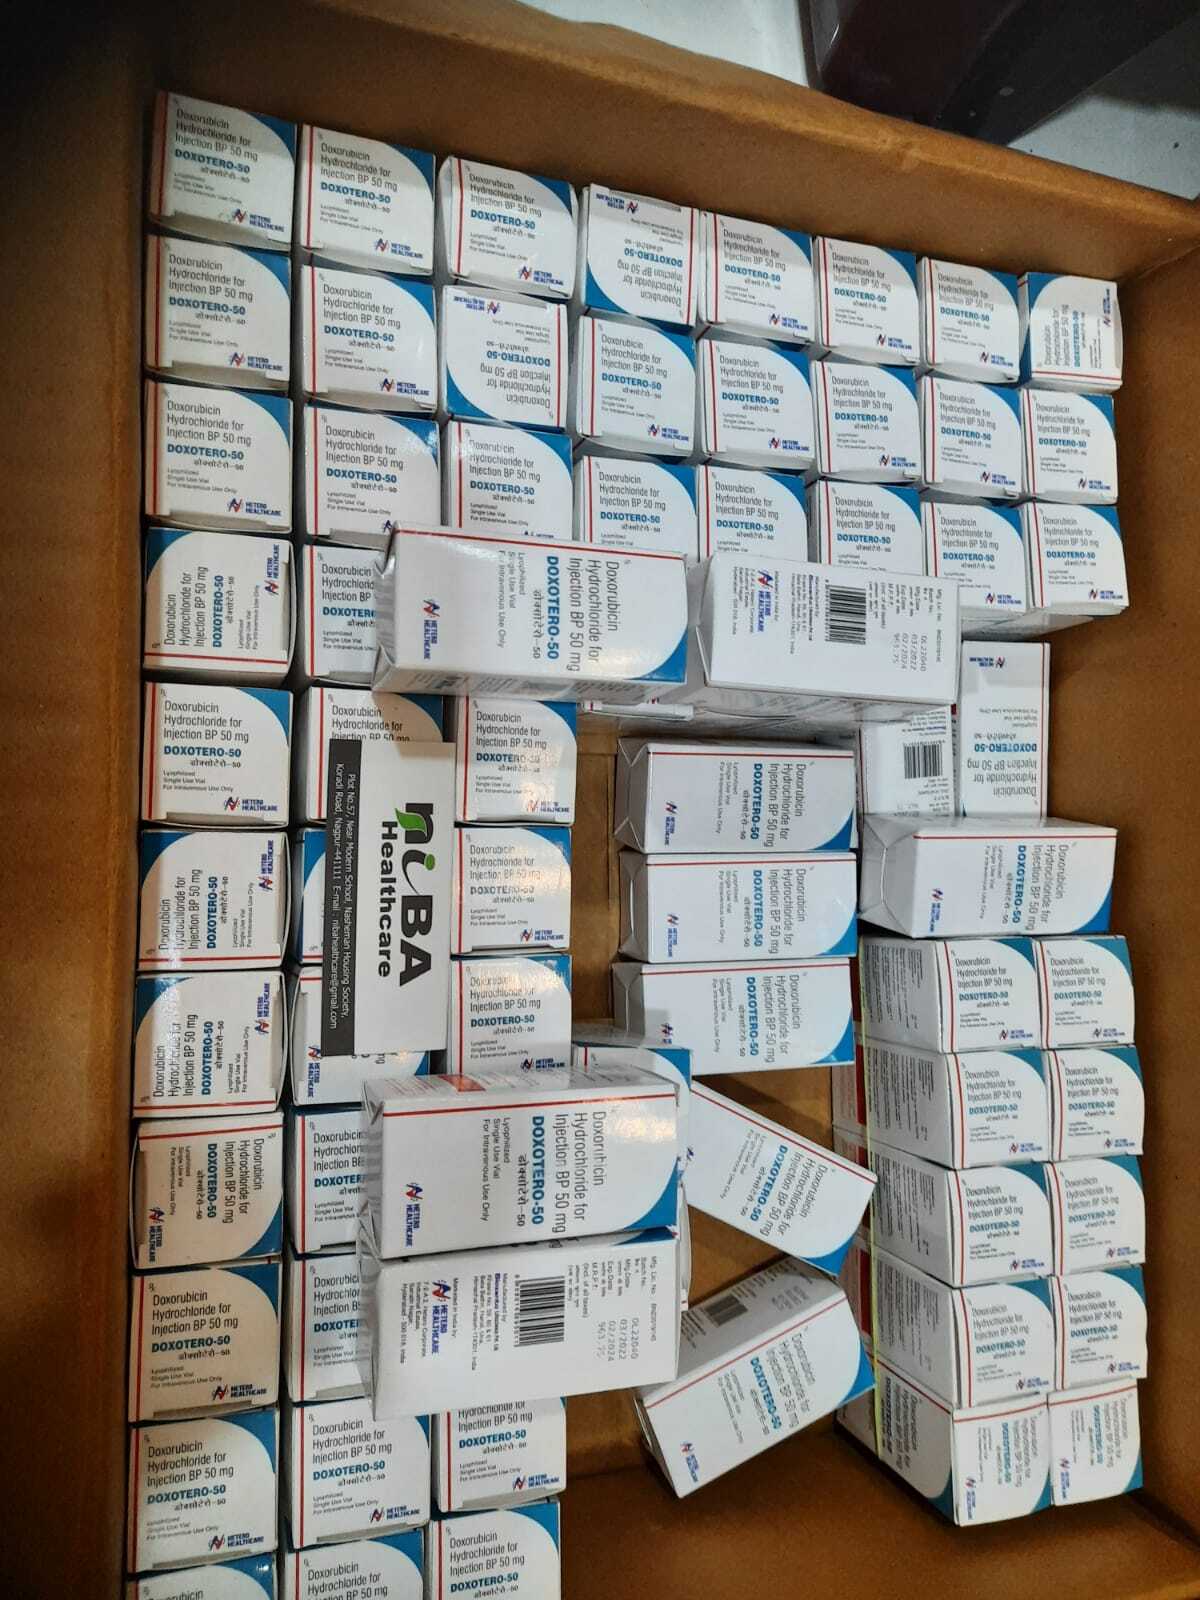 Doxotero 50 mg